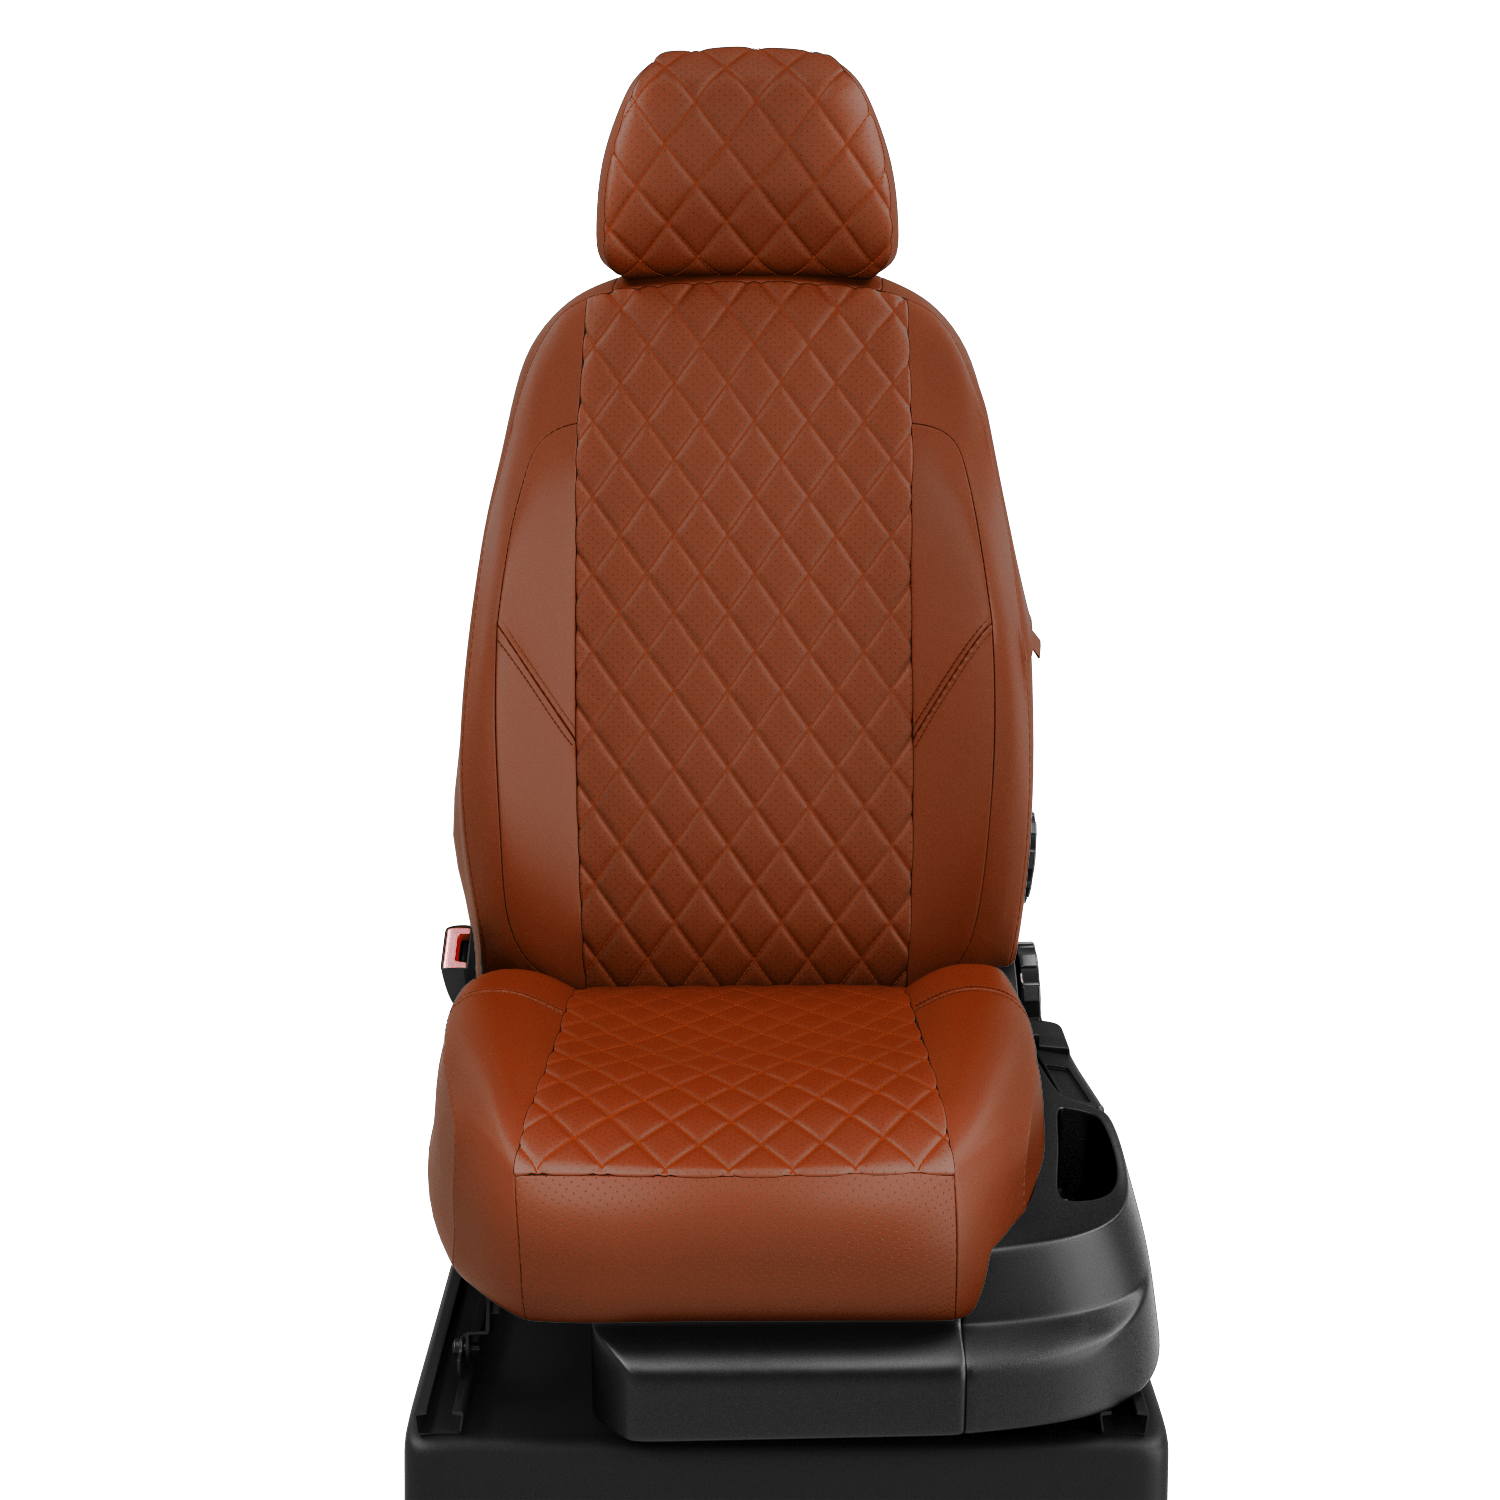 Чехлы на сиденья Nissan Qashqai 2 J11 с 2014-н. в. джип 5 мест фокс-фокс NI19-0803-EC27-R-fox